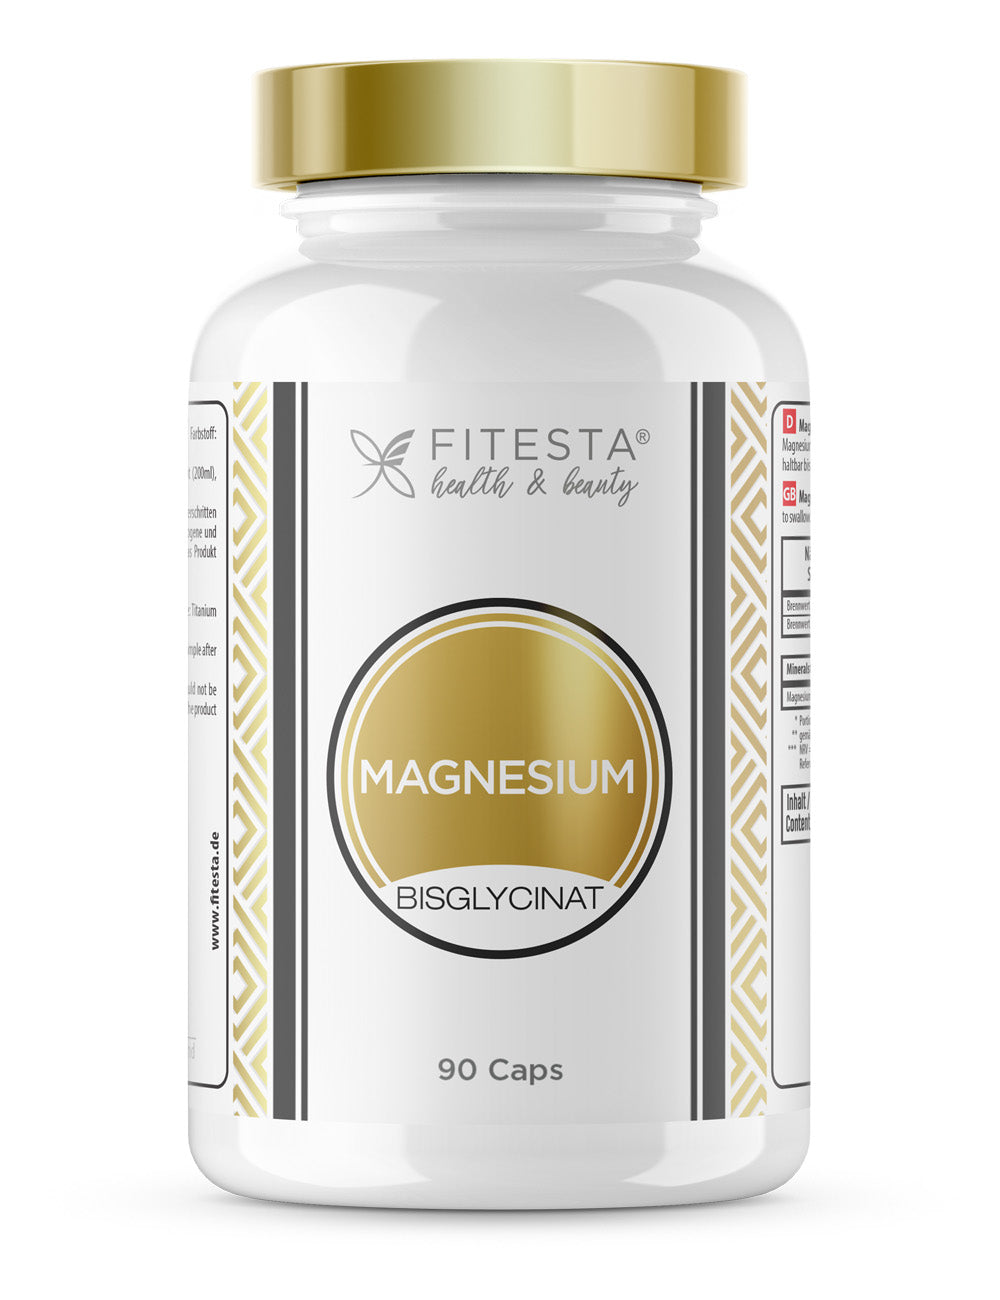 Magnesium Bisglycinat - 90 Caps